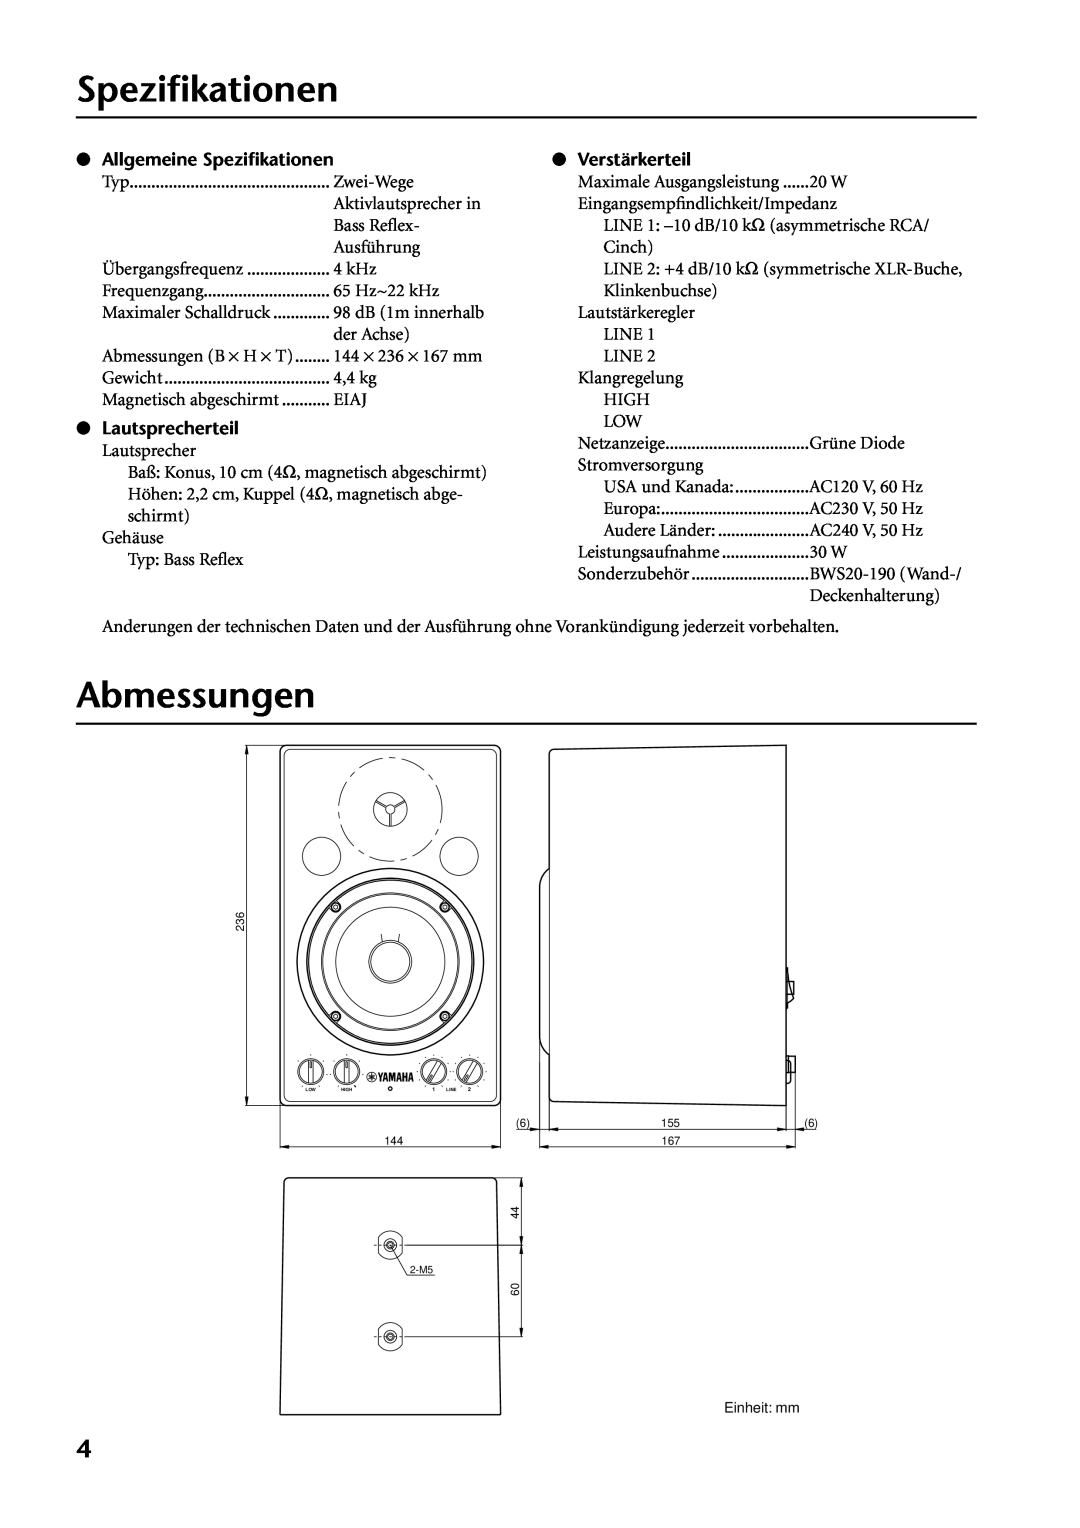 Yamaha MSP3 owner manual Abmessungen, Allgemeine Speziﬁkationen, Lautsprecherteil, Verstärkerteil 